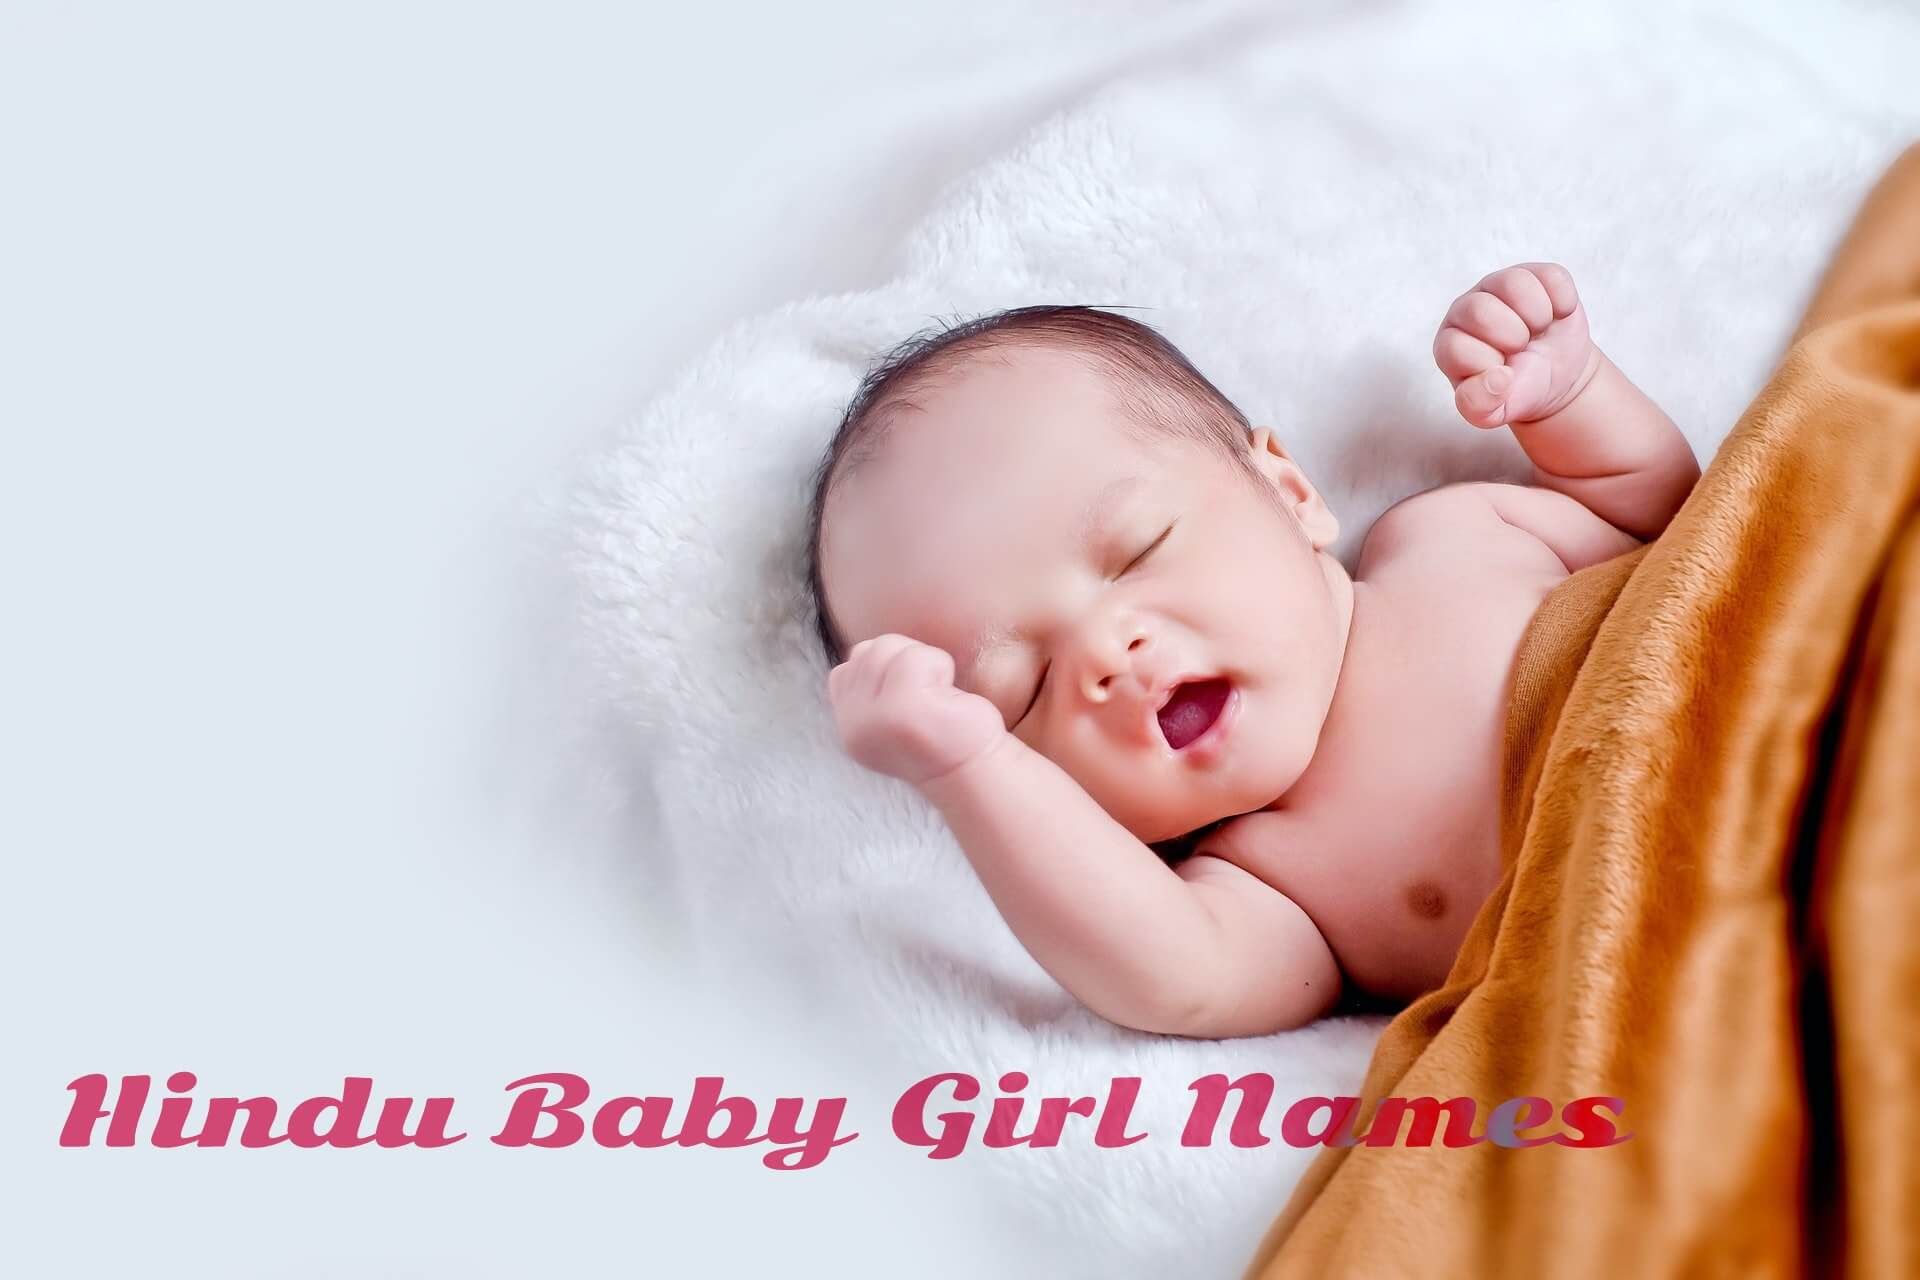 'image Hindu Baby Girl Names'